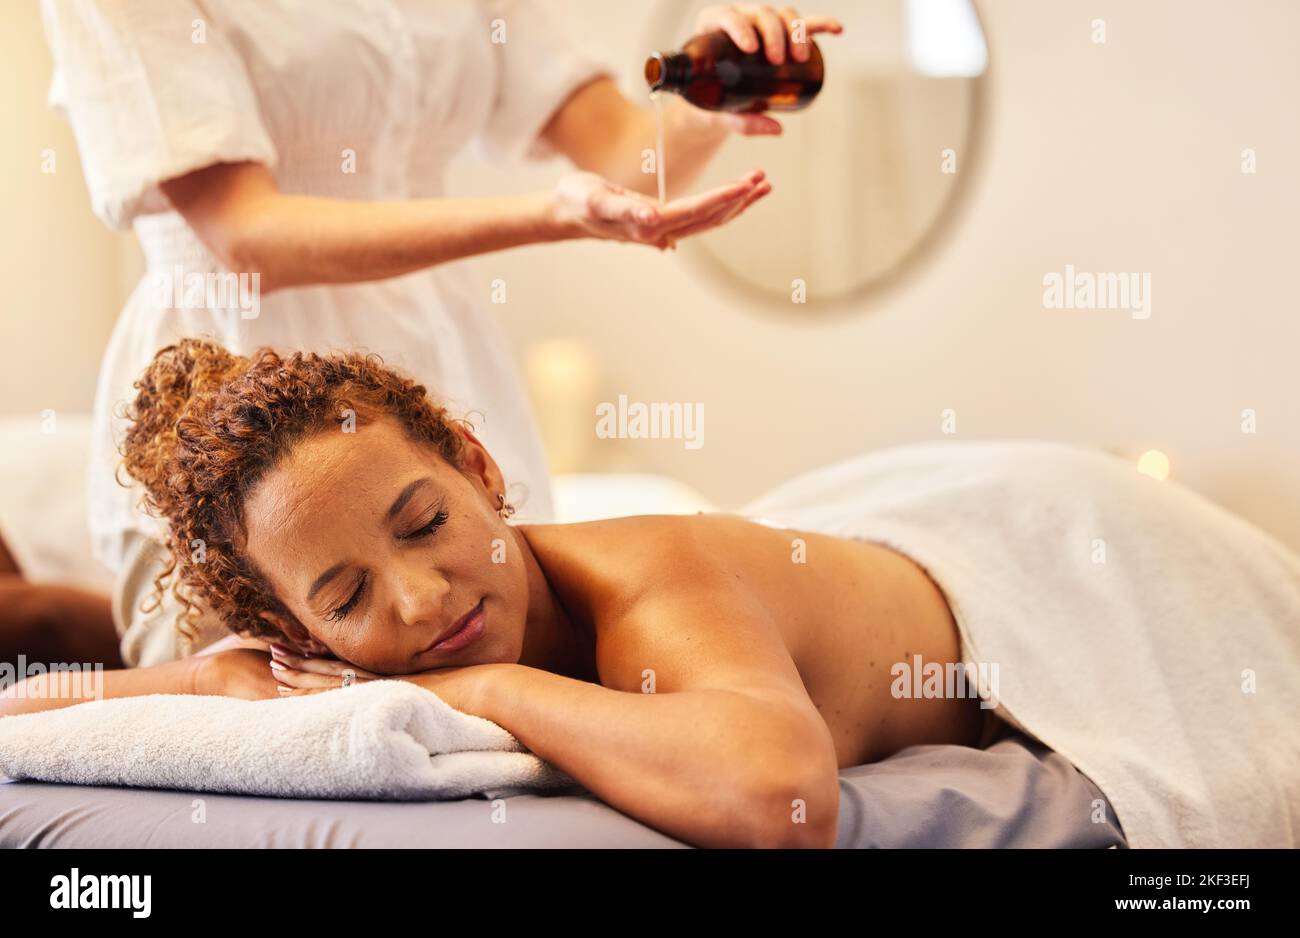 Spa, Luxus-Massage und Frau mit ätherischem Öl bekommen Rückenmassage für Wellness im Schönheitssalon. Gesundheit, Schönheit und schwarze Frau mit Massage Stockfoto